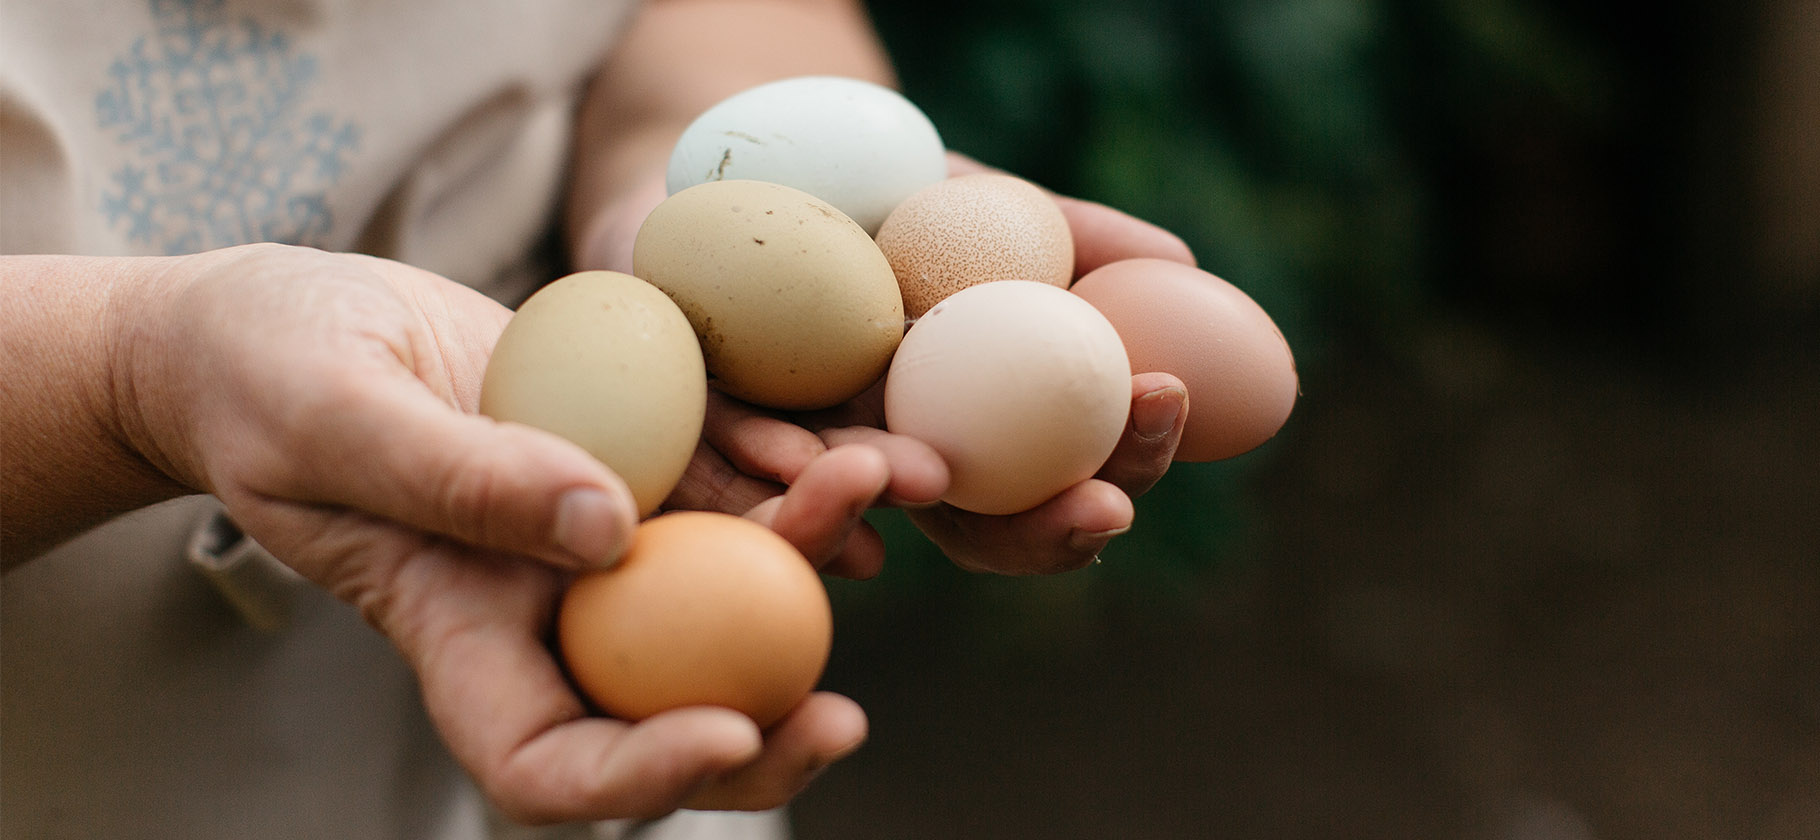 «Коричневые полезнее белых» и еще 7 мифов о яйцах